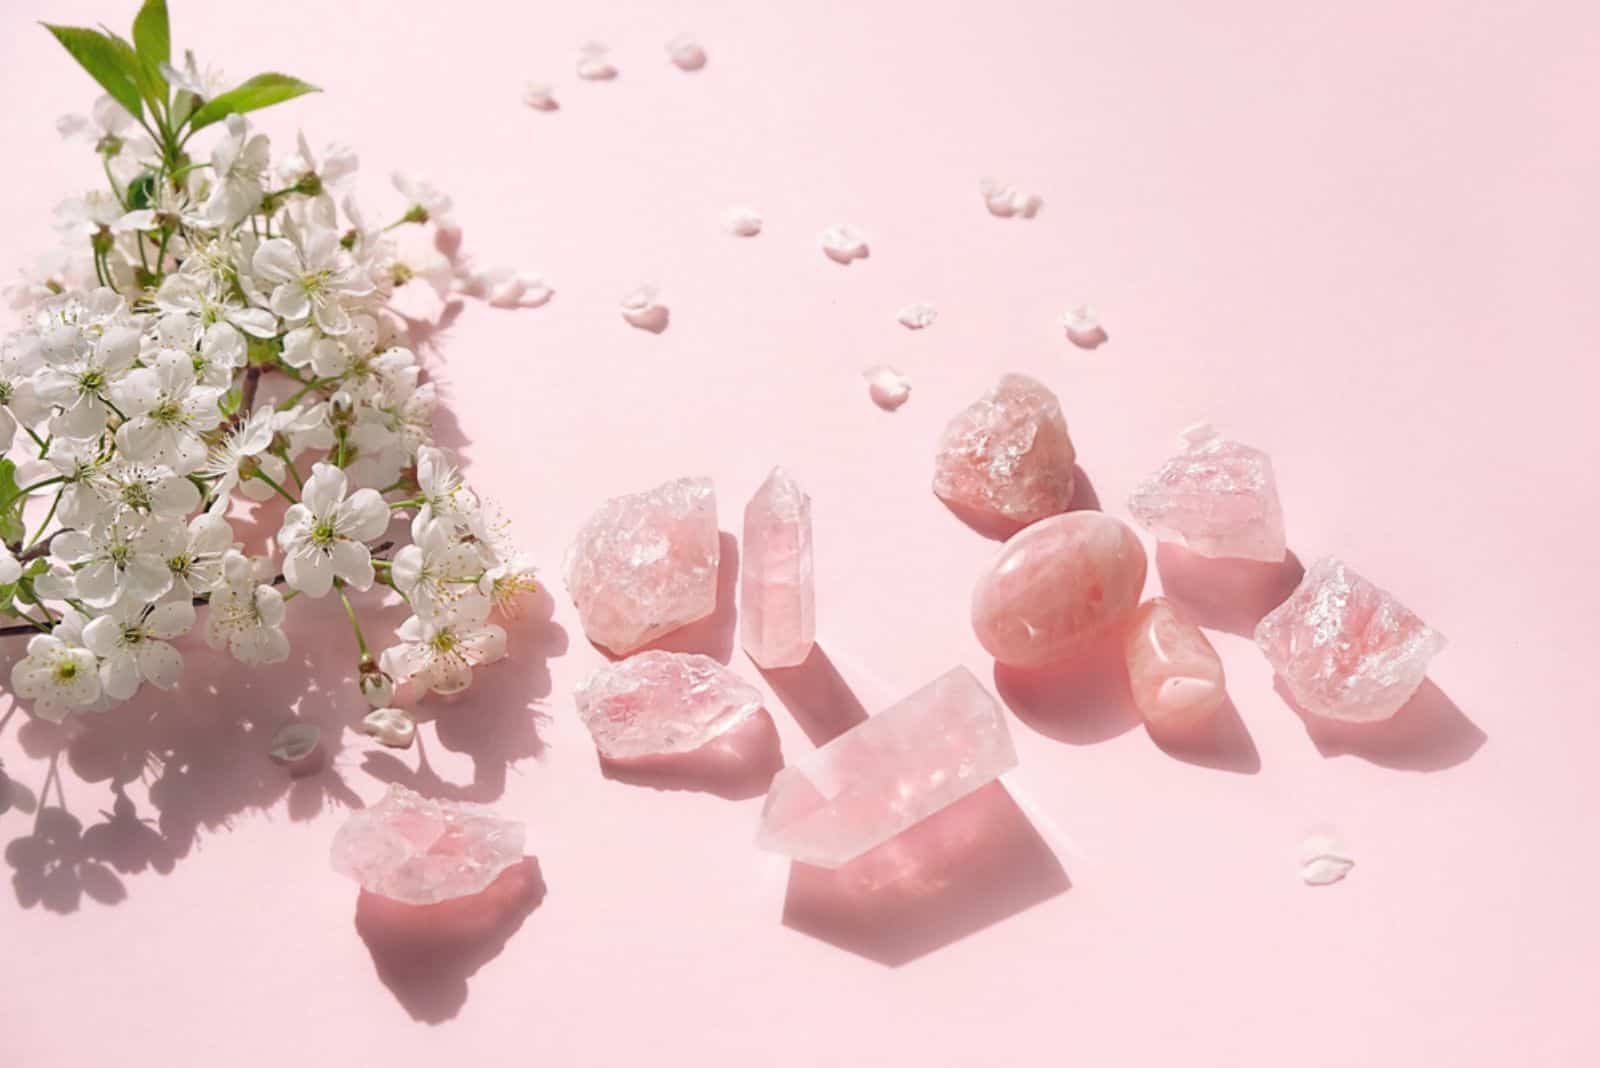 Ensemble de minéraux de quartz rose et fleurs blanches sur fond rose